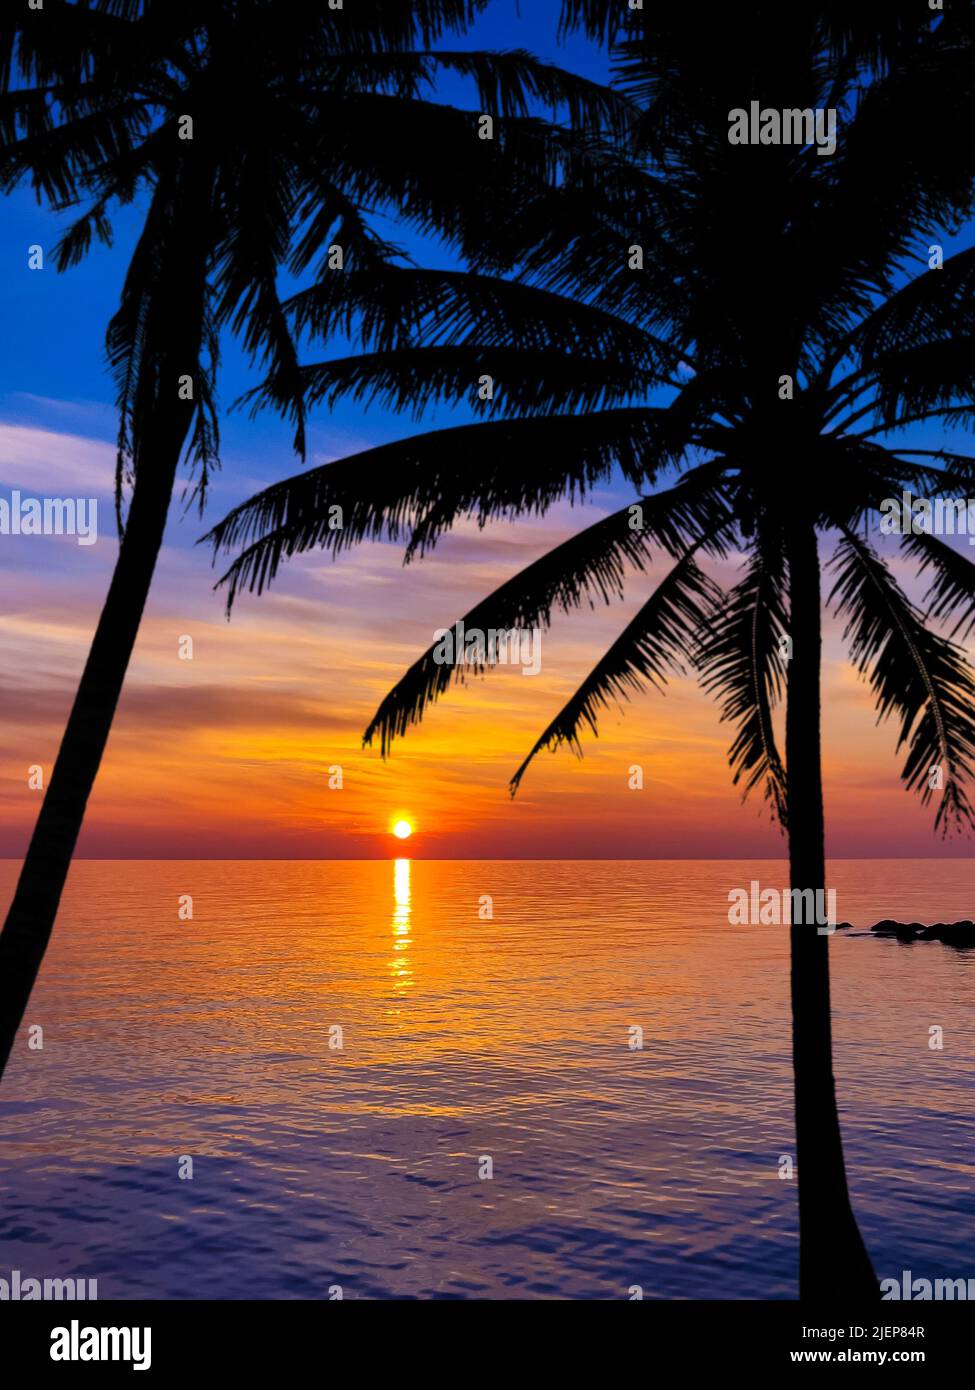 Silhouette de palmiers magnifique coucher de soleil sur la plage tropicale Banque D'Images